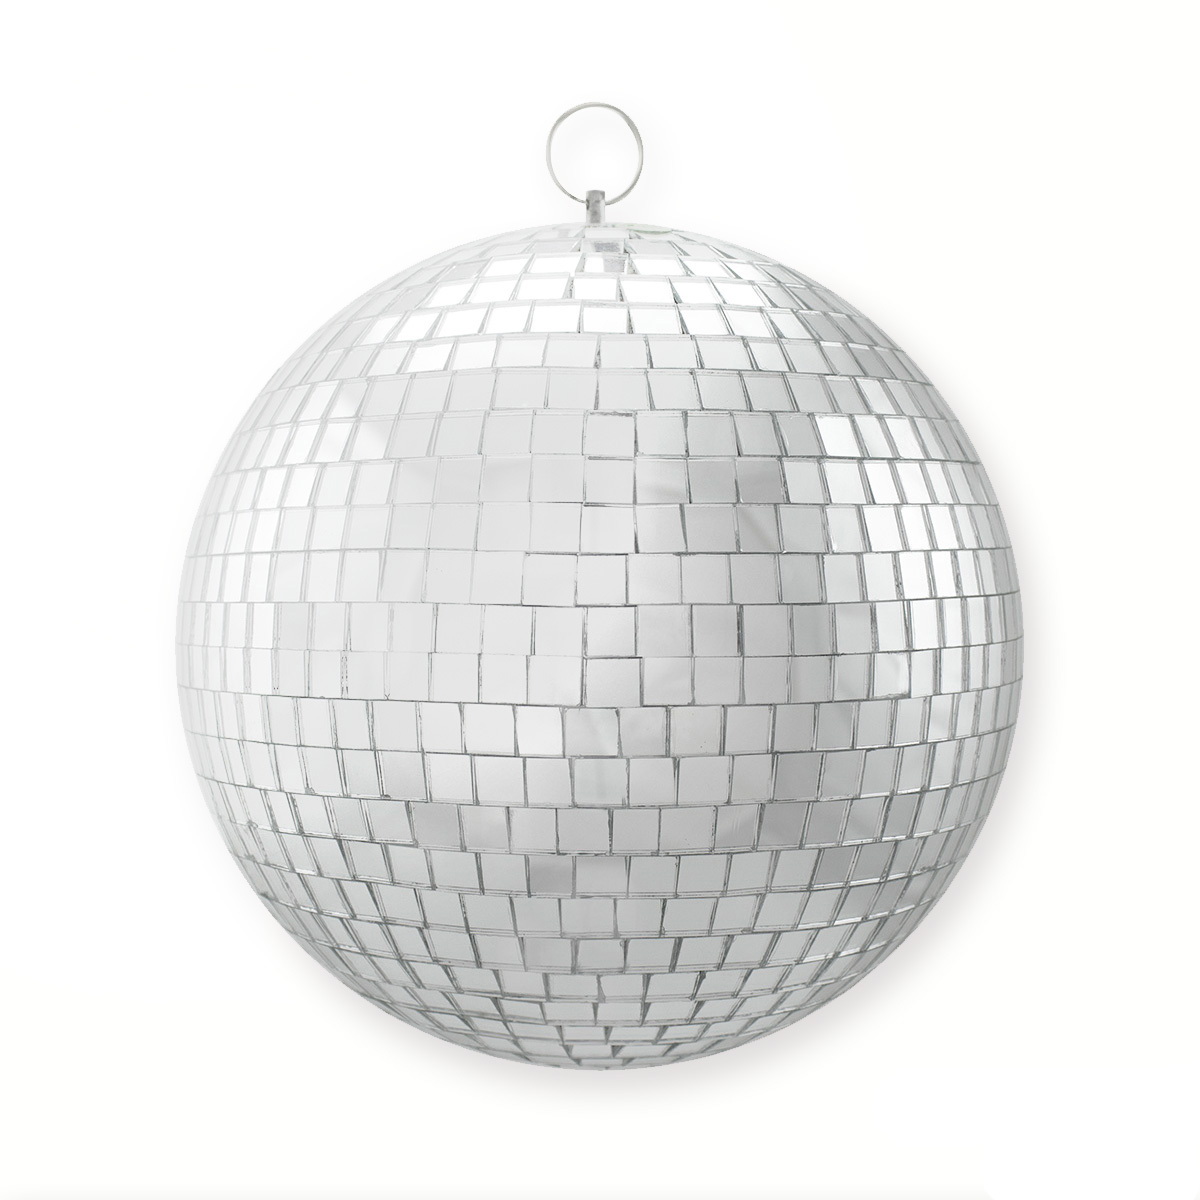 Spiegelkugel 20cm silber- Diskokugel (Discokugel) zur Dekoration und Party- Echtglas - mirrorball silver chrome